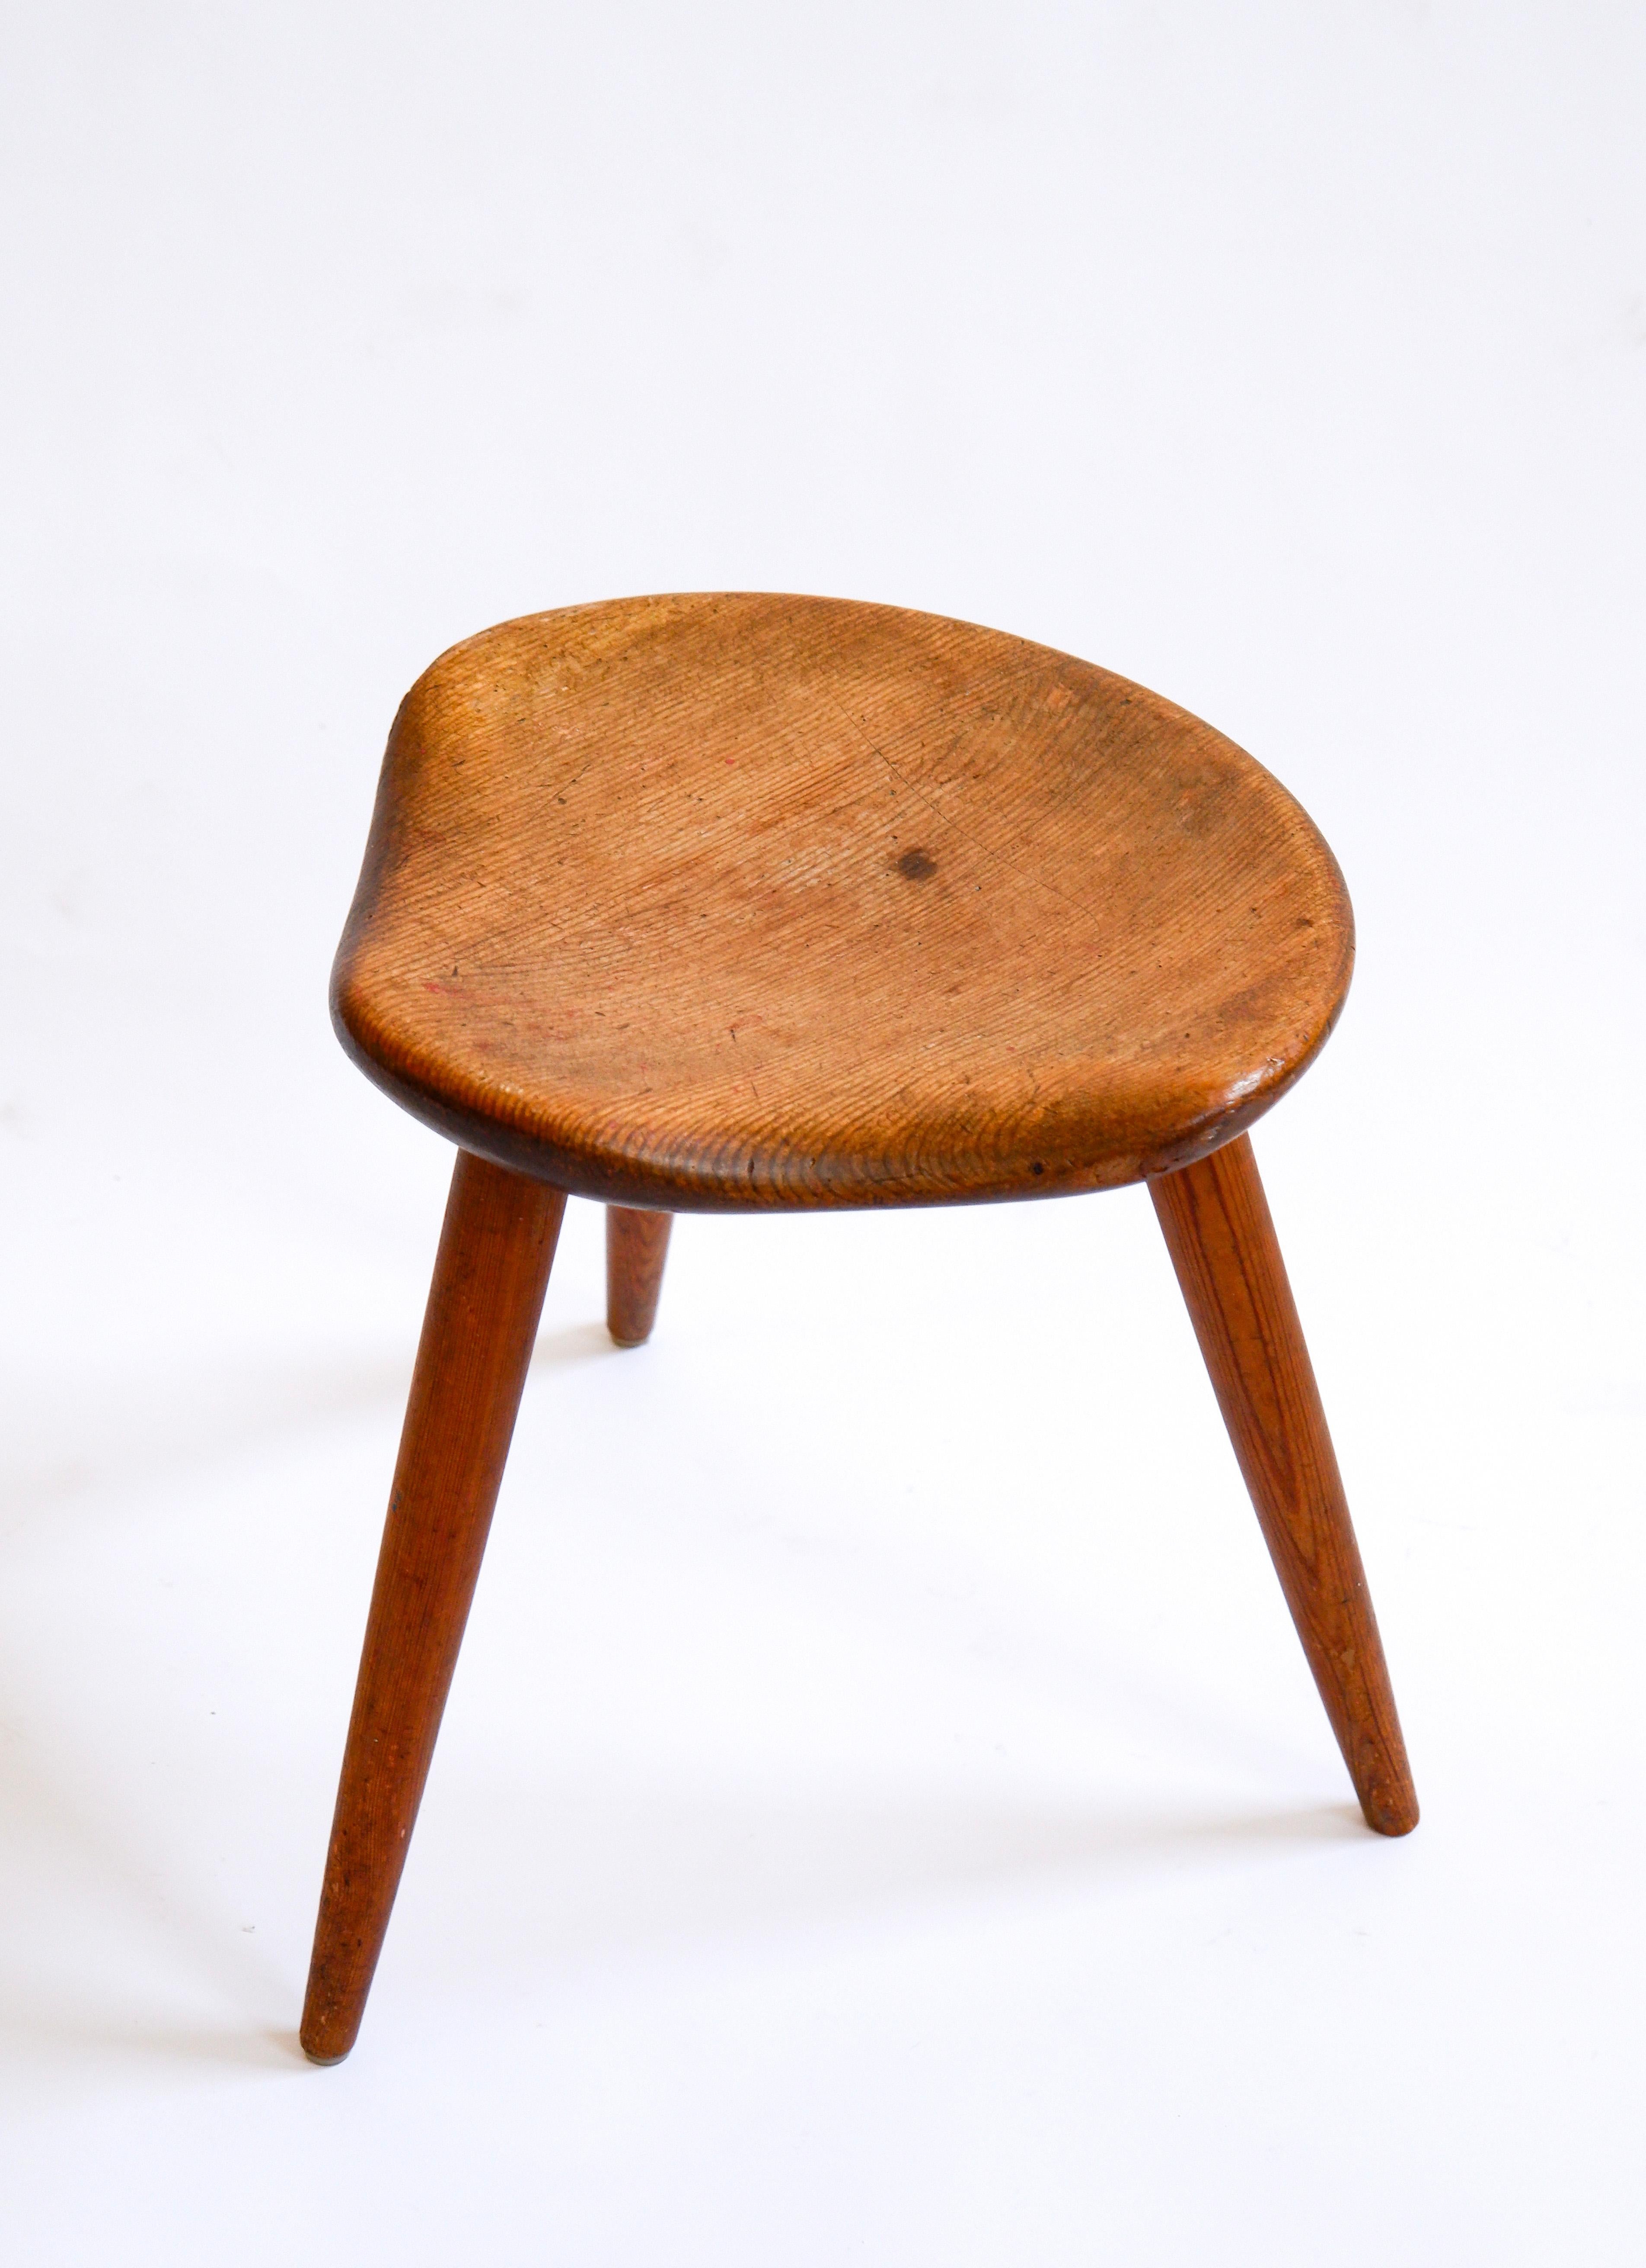 Hocker aus norwegischer Kiefer, entworfen und hergestellt von Norsk Husflid in den 50er Jahren. Dieser dreibeinige Hocker besteht aus drei schlanken Füßen mit einer Sitzfläche in Form eines Pferdesattels auf der Oberseite. Ein ganz besonderes Design